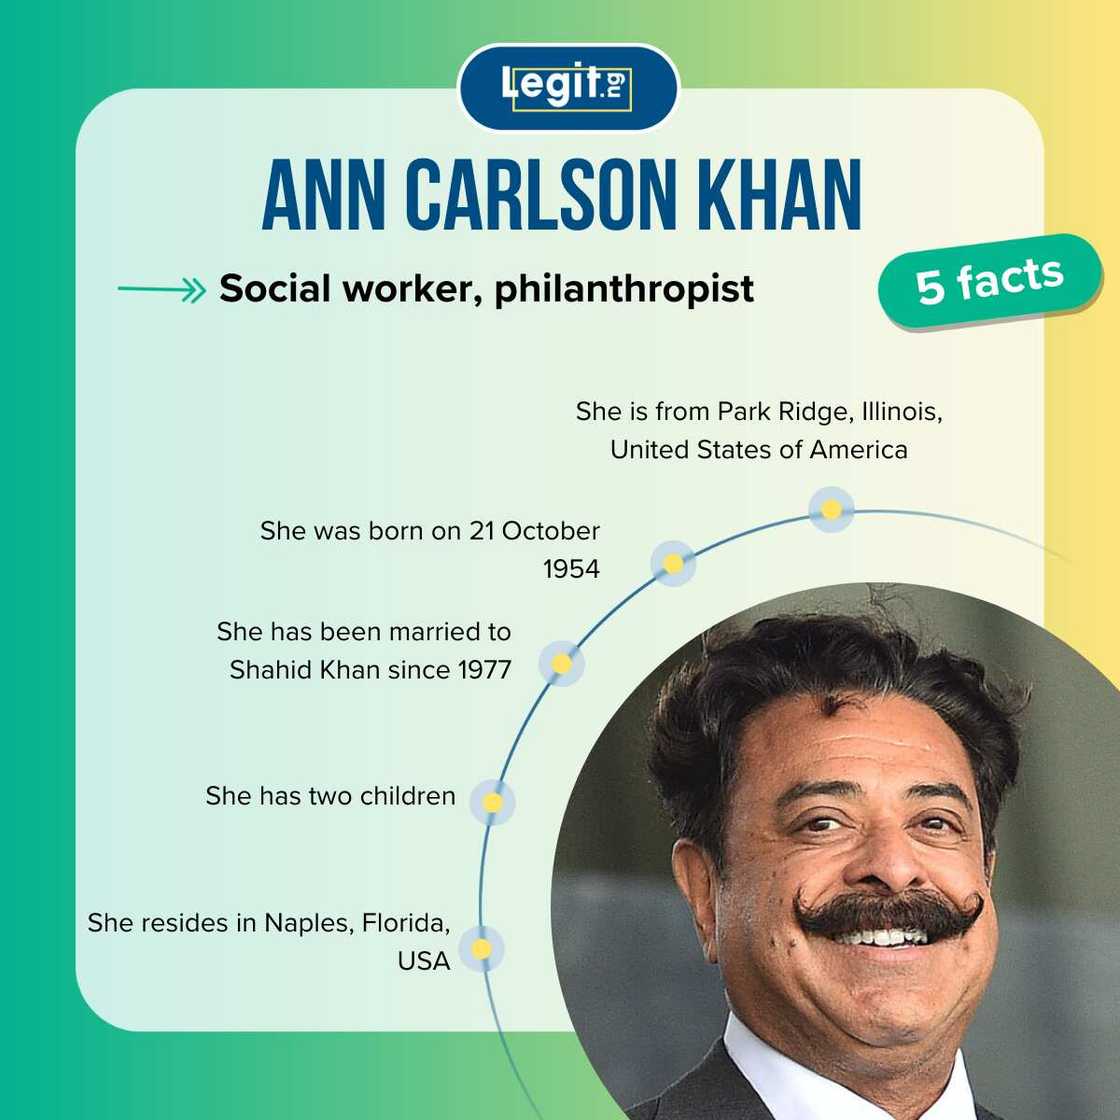 Facts about Ann Carlson Khan